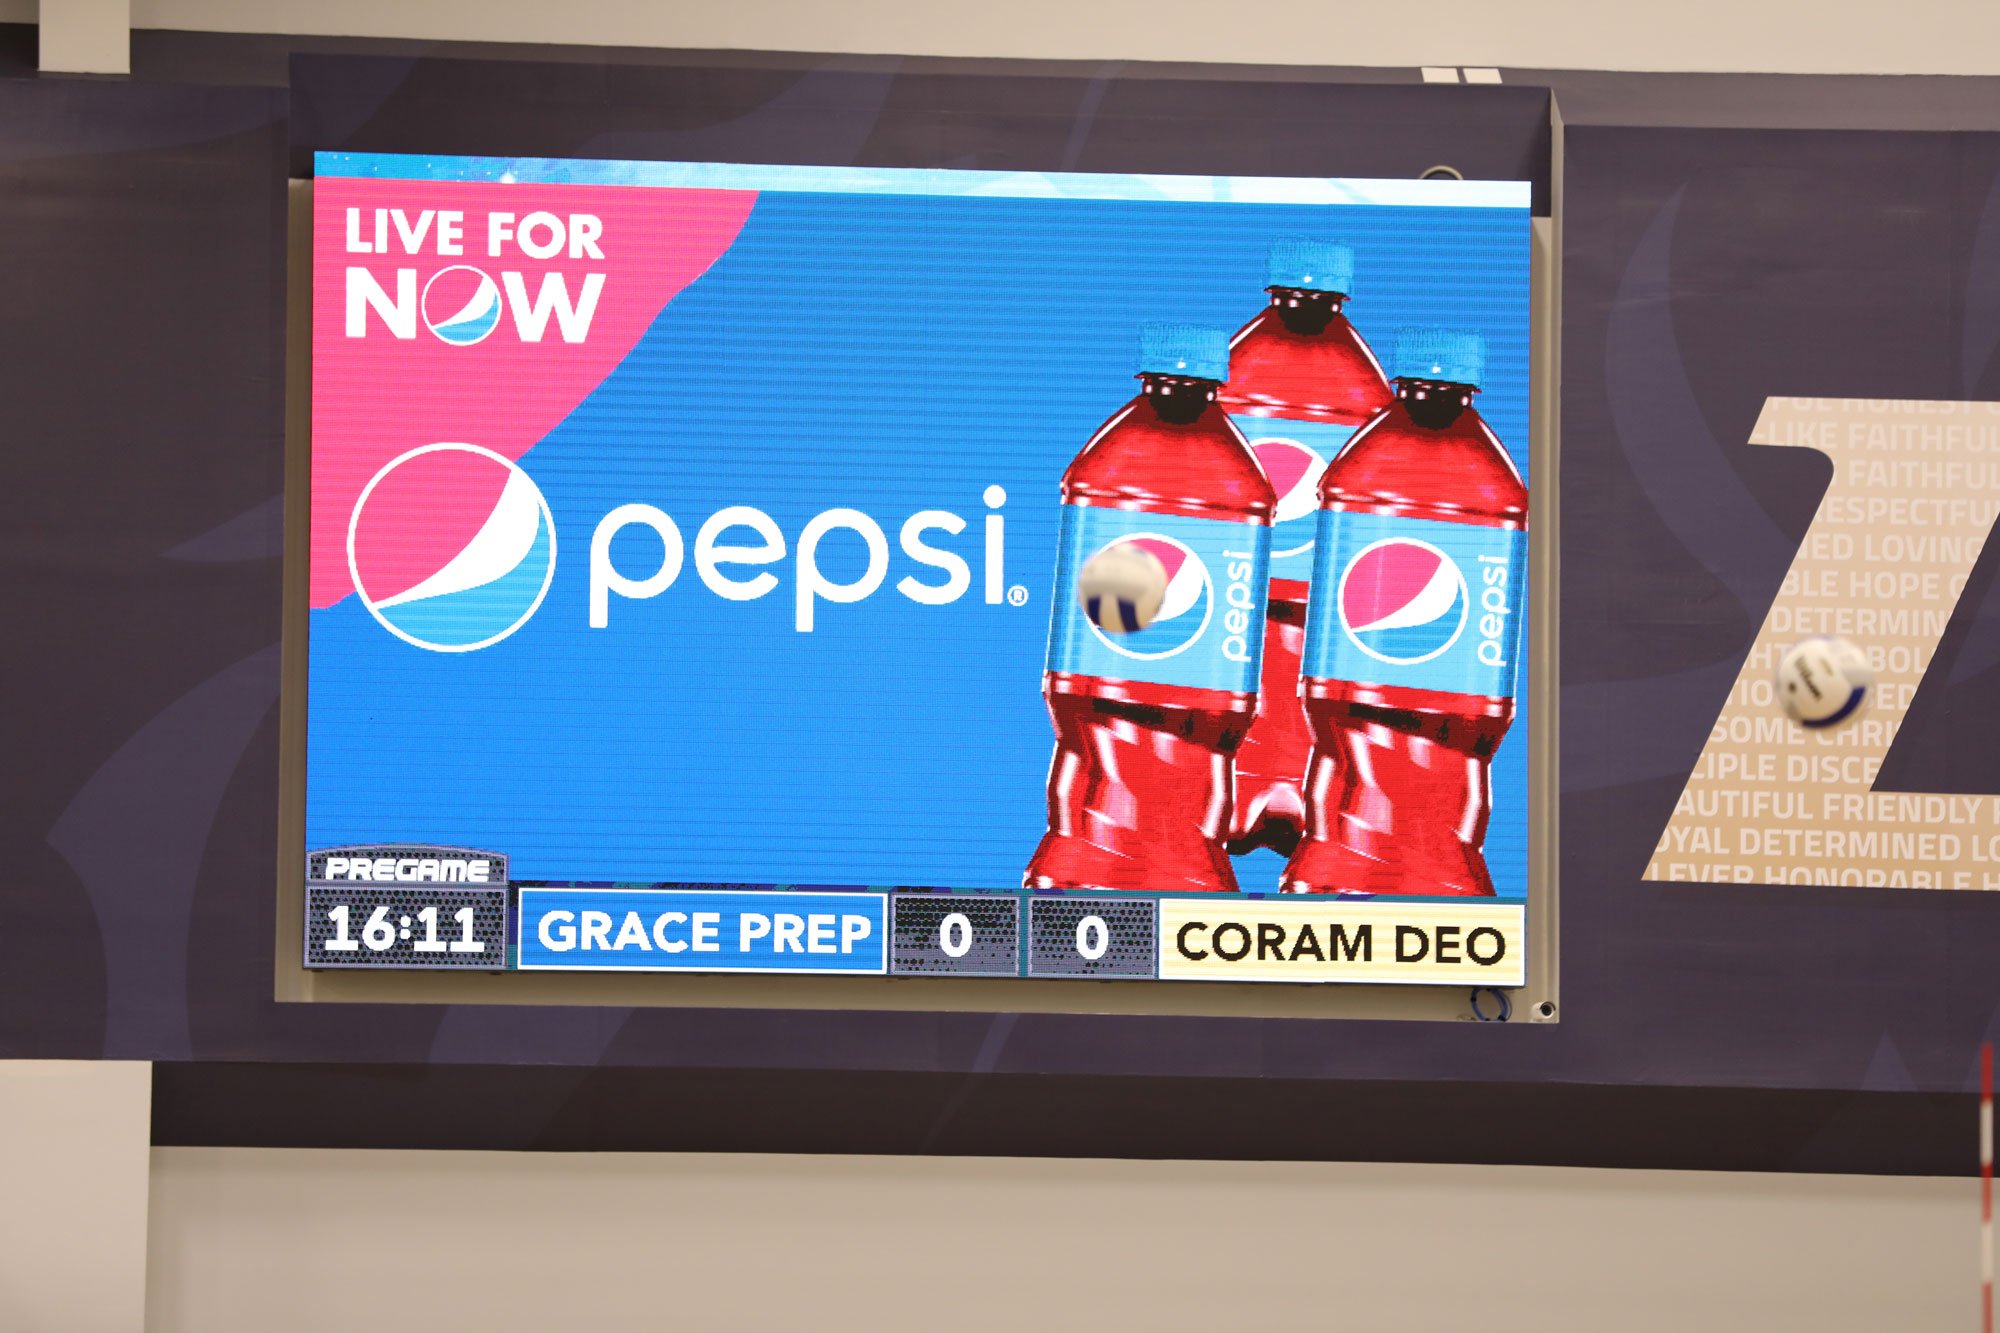 Grace Prep Pepsi Cinema Ad on ScoreVision Video Scoreboard